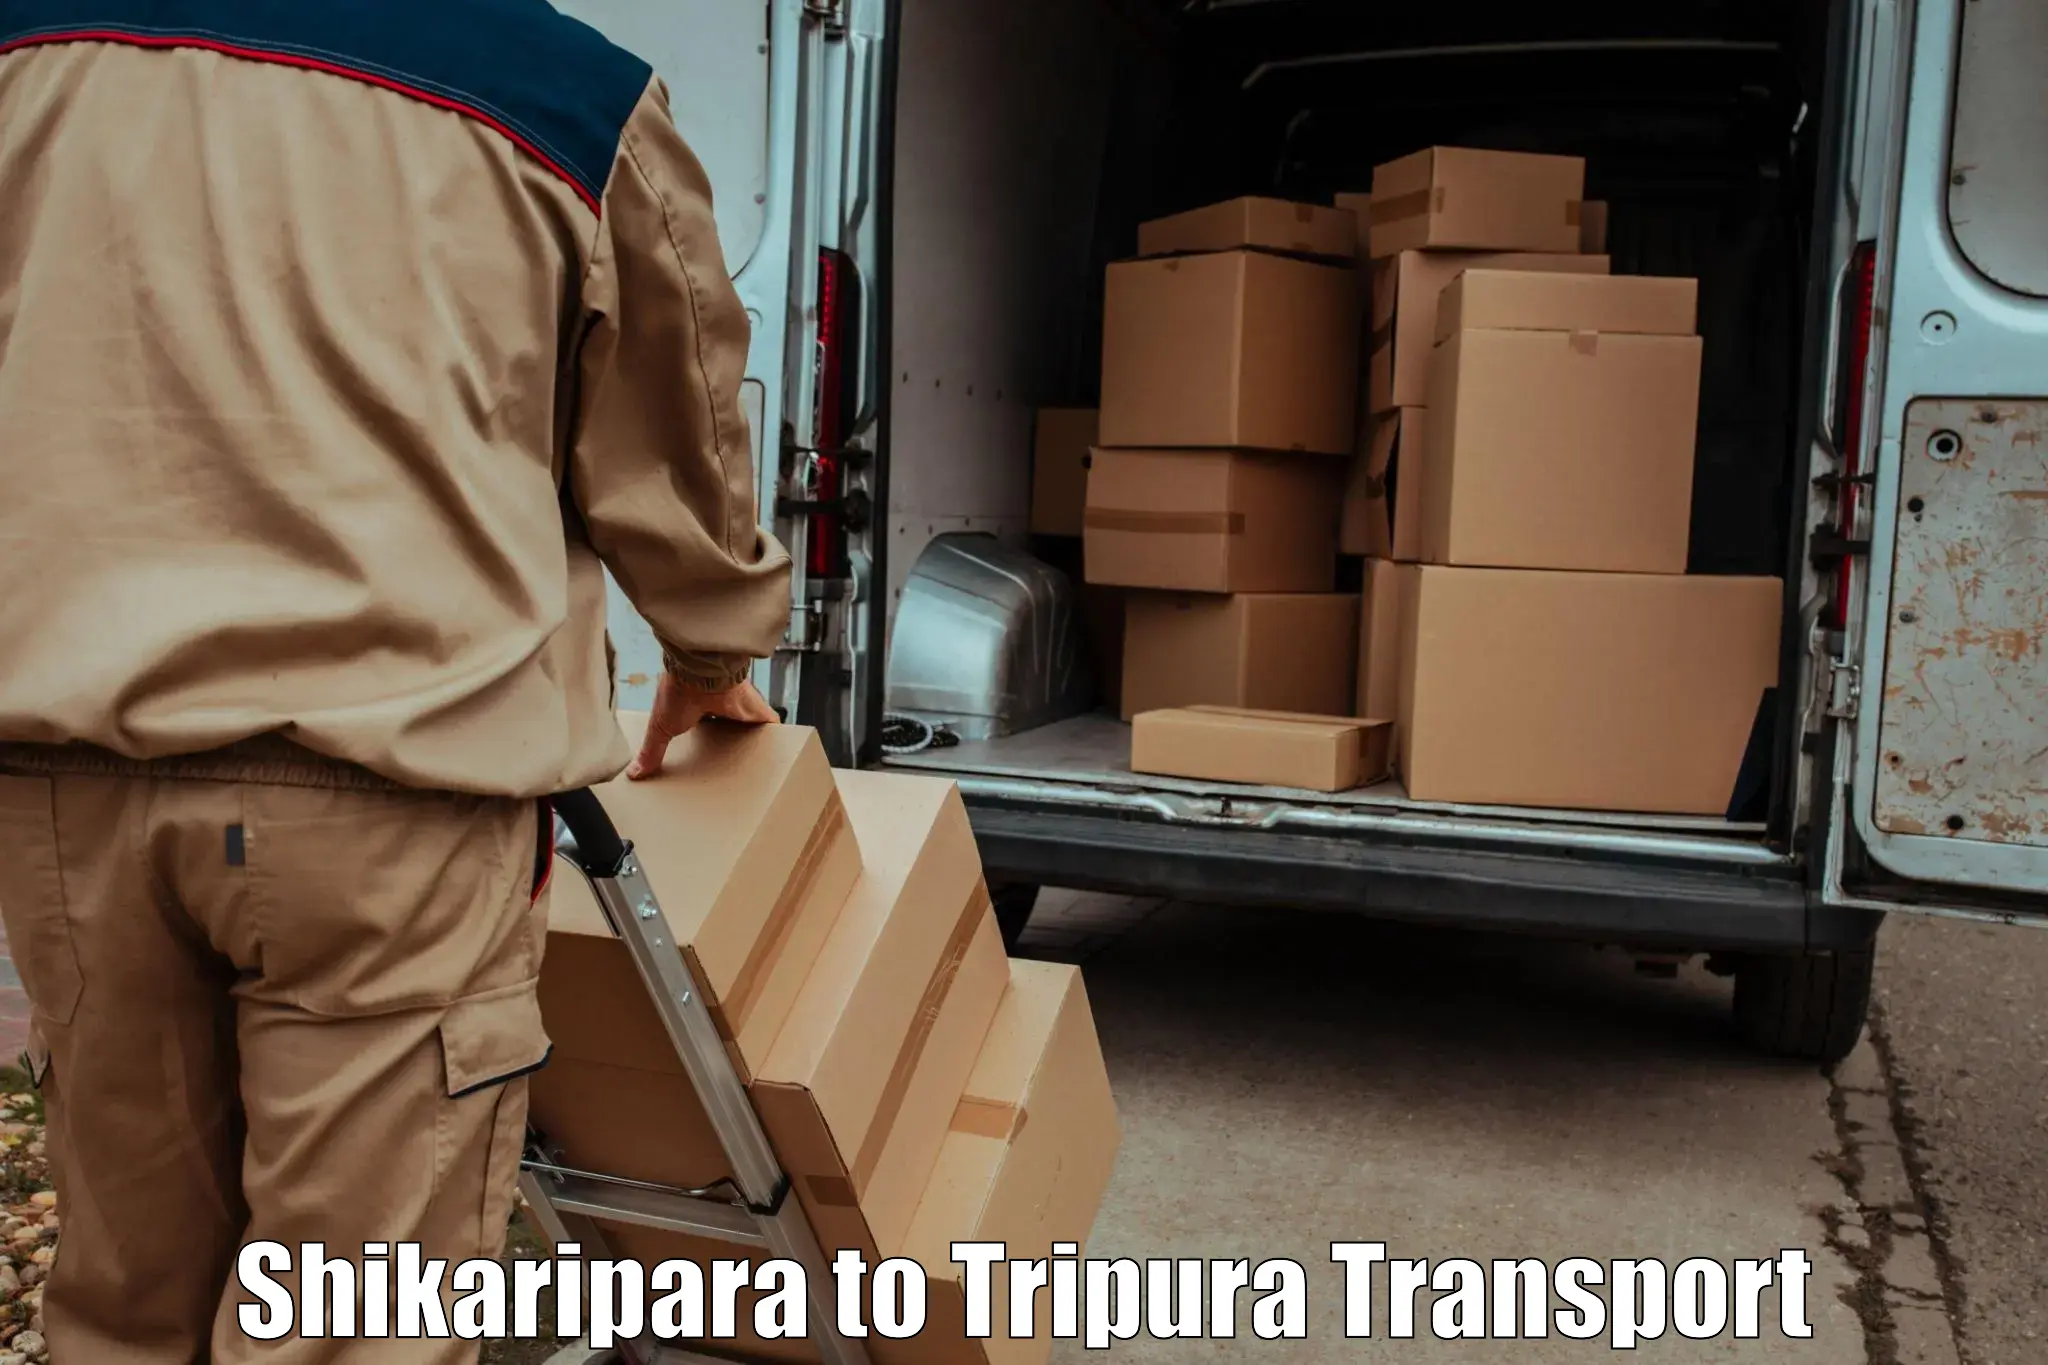 Pick up transport service Shikaripara to Kailashahar